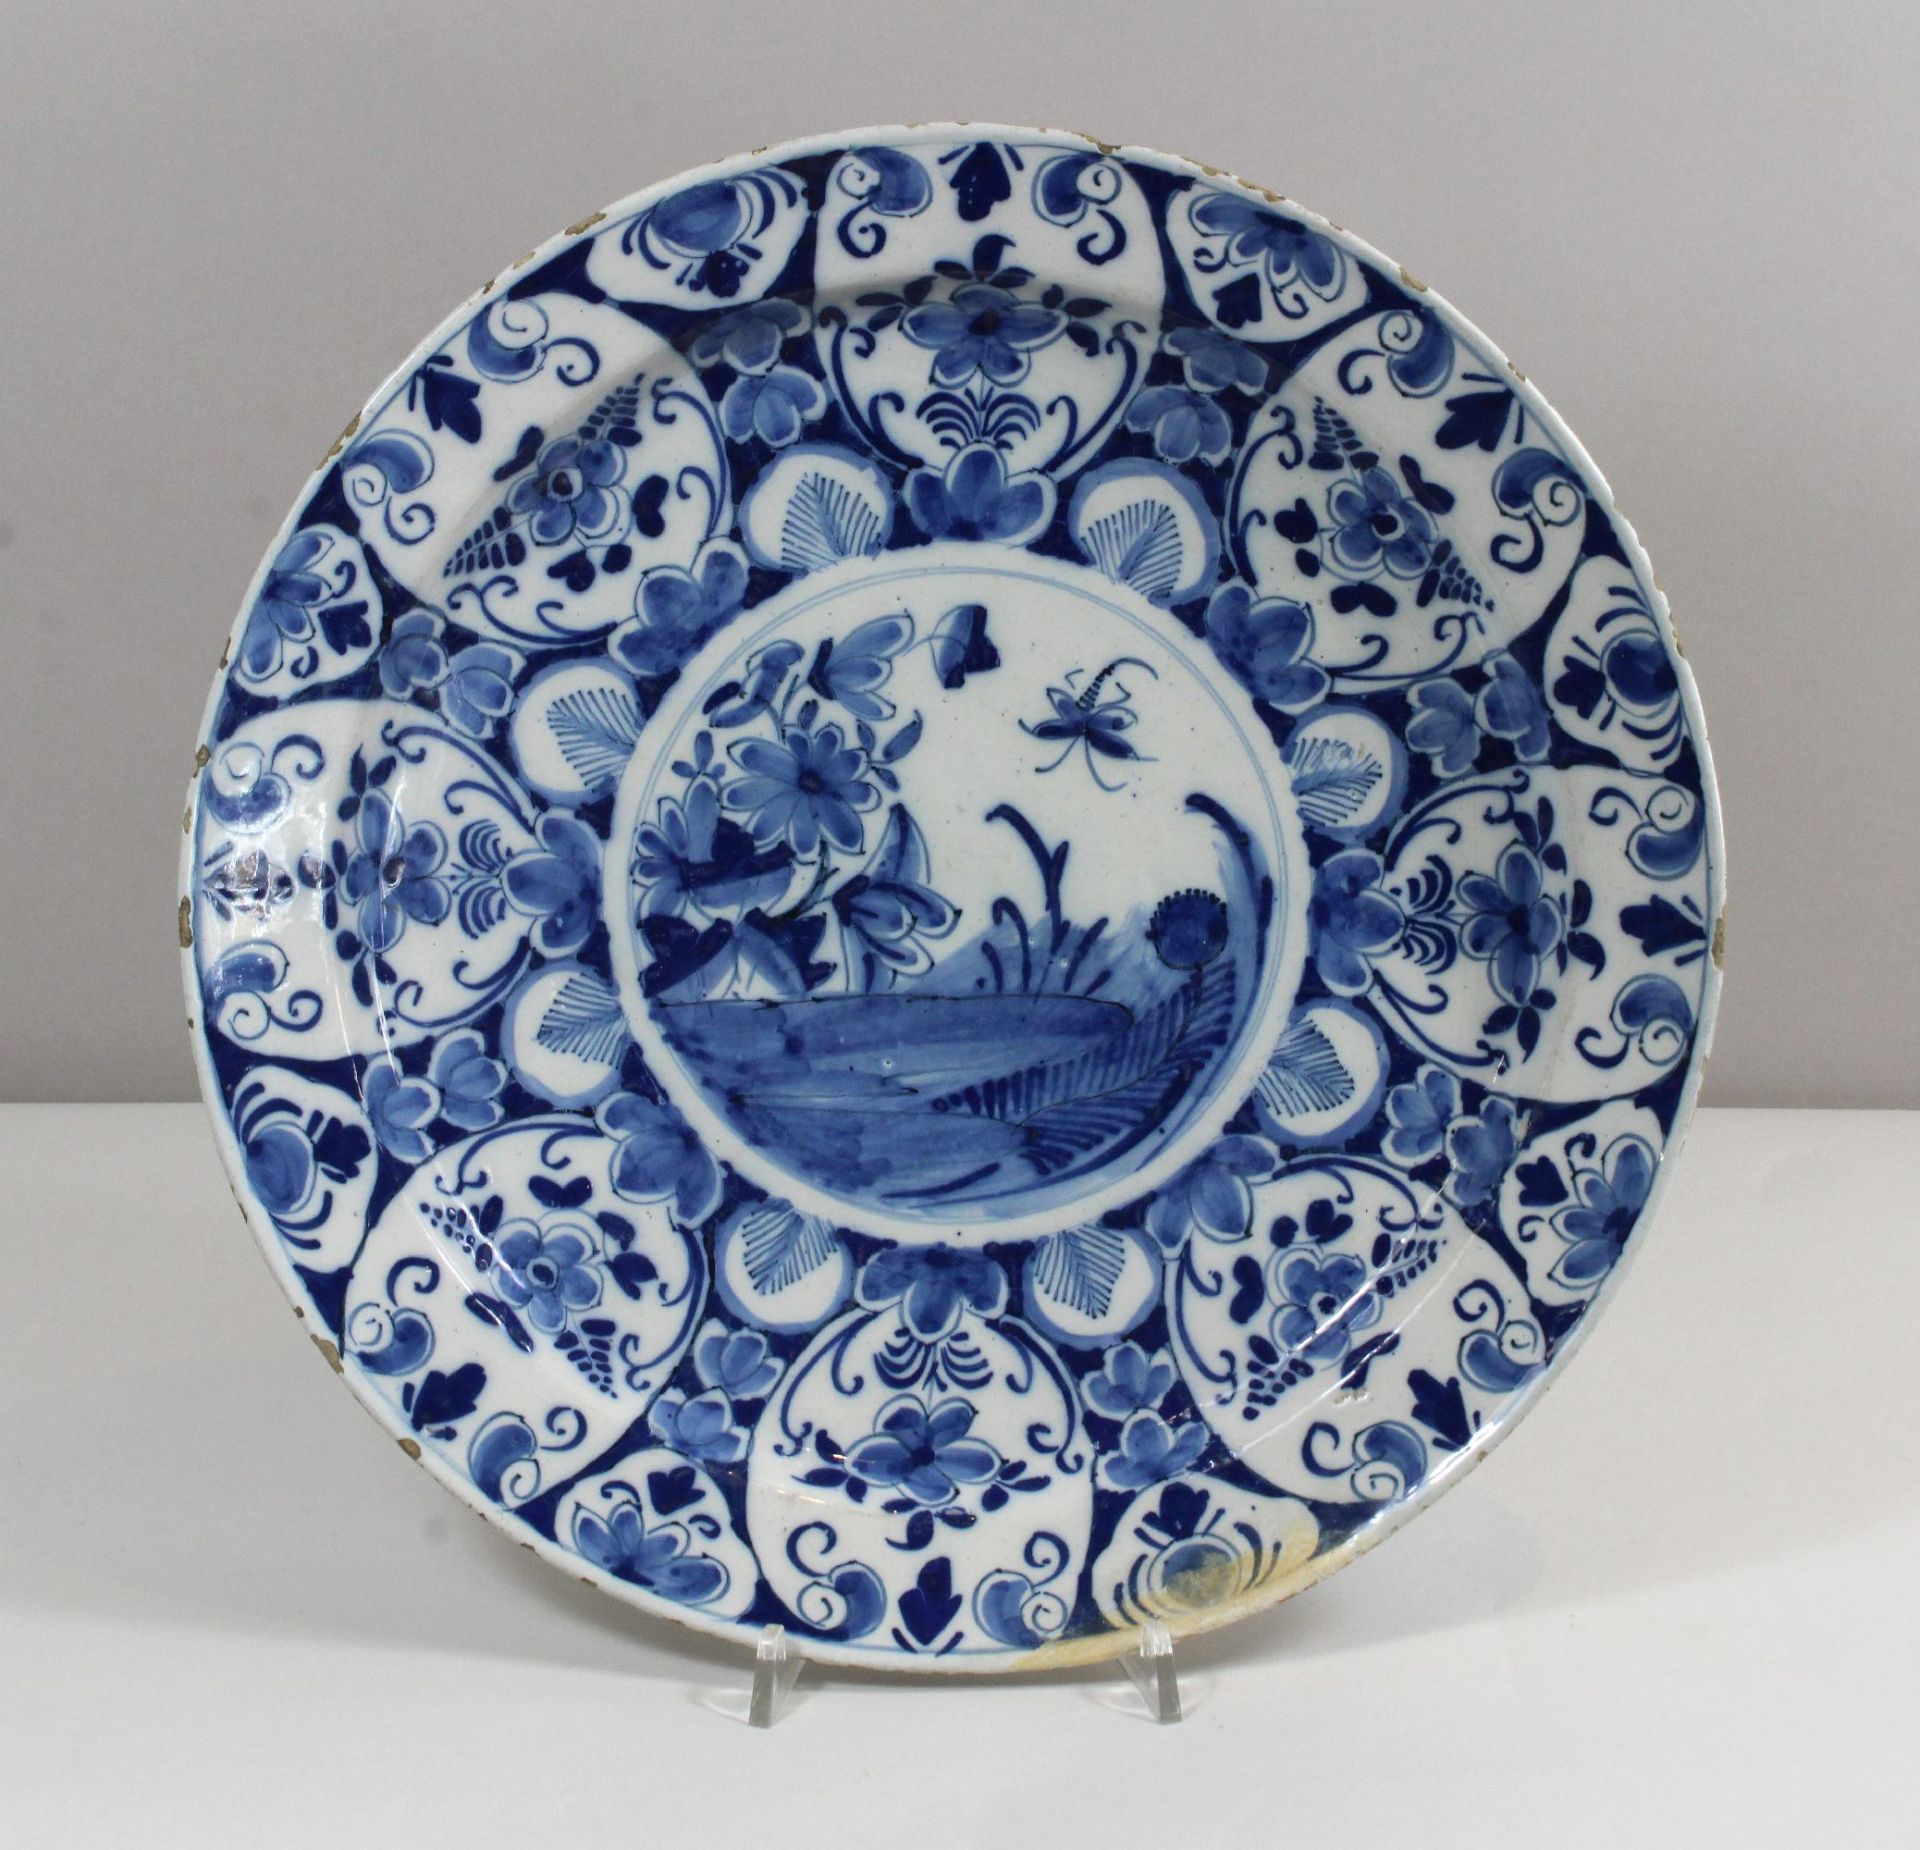 Teller, Fayence, wohl Delft, blau-weiße Unterglasur, Floraldekor, Durchmesser: 33,5 cm.